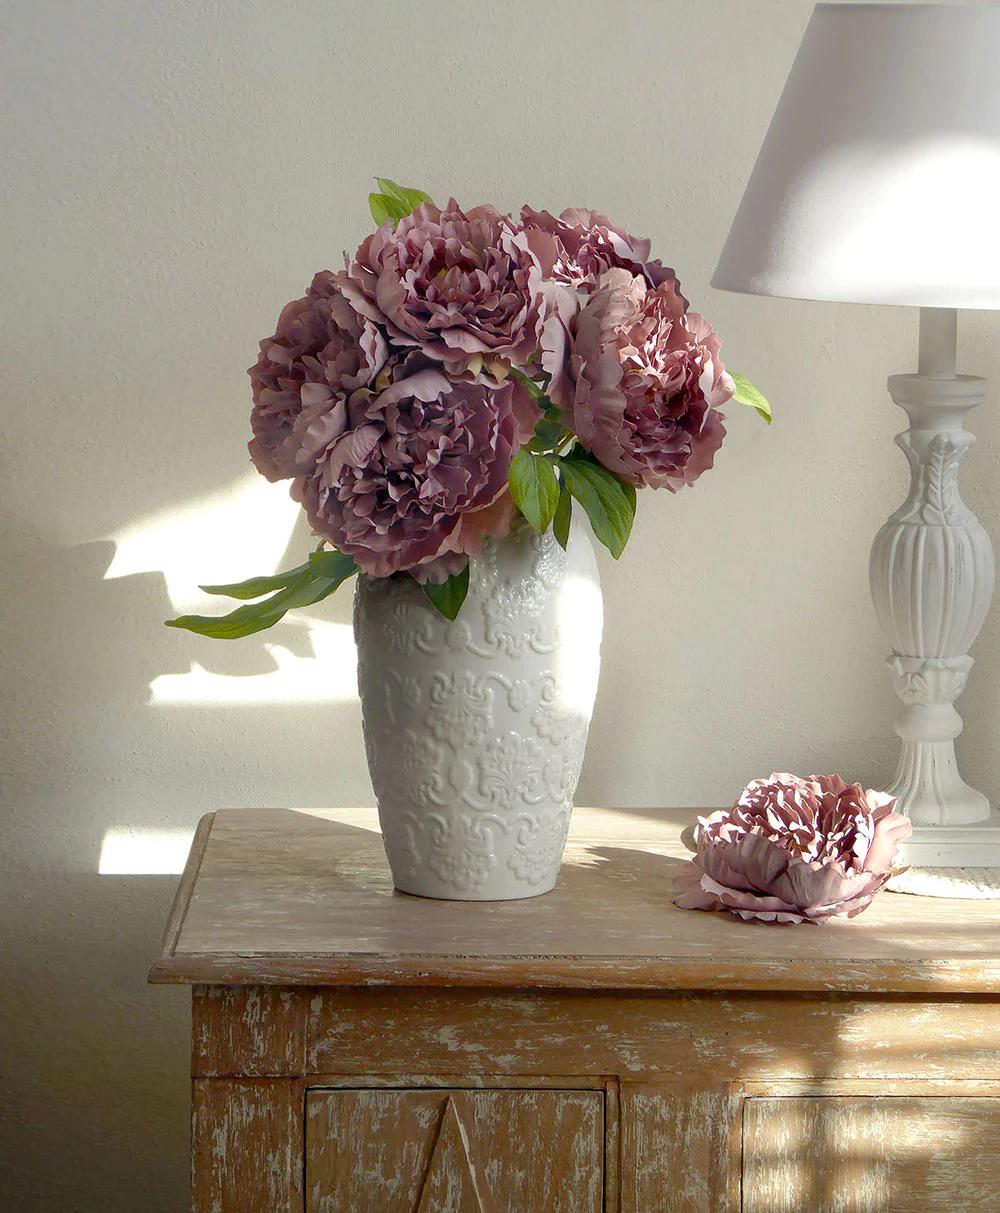 vasi per fiori da interno - Dove mettere i fiori se non si ha un vaso